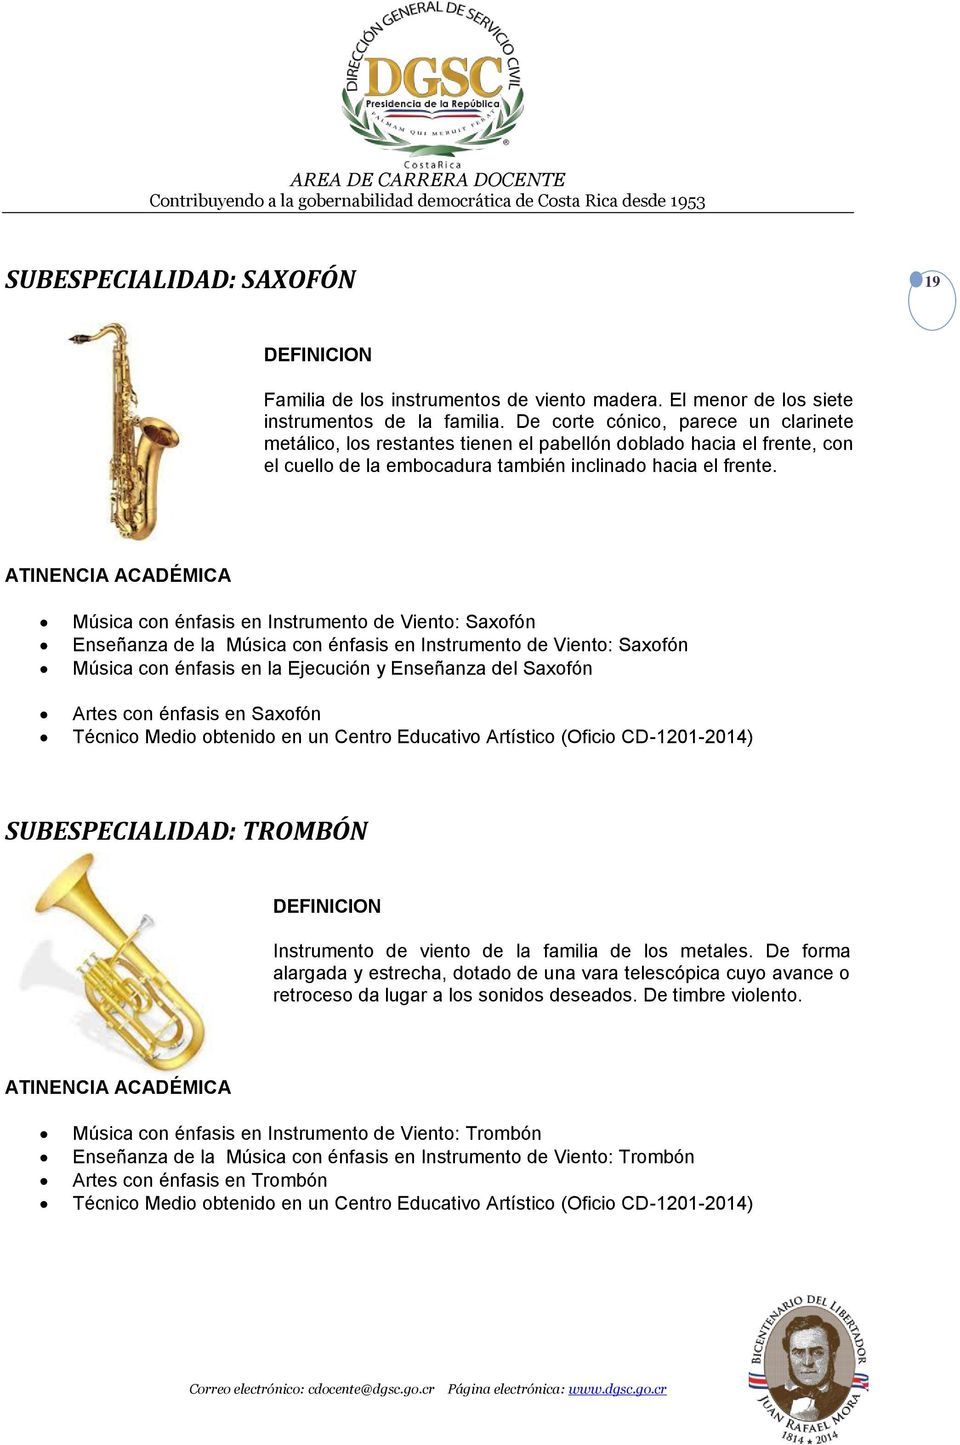 ATINENCIA ACADÉMICA Música con énfasis en Instrumento de Viento: Saxofón Enseñanza de la Música con énfasis en Instrumento de Viento: Saxofón Música con énfasis en la Ejecución y Enseñanza del